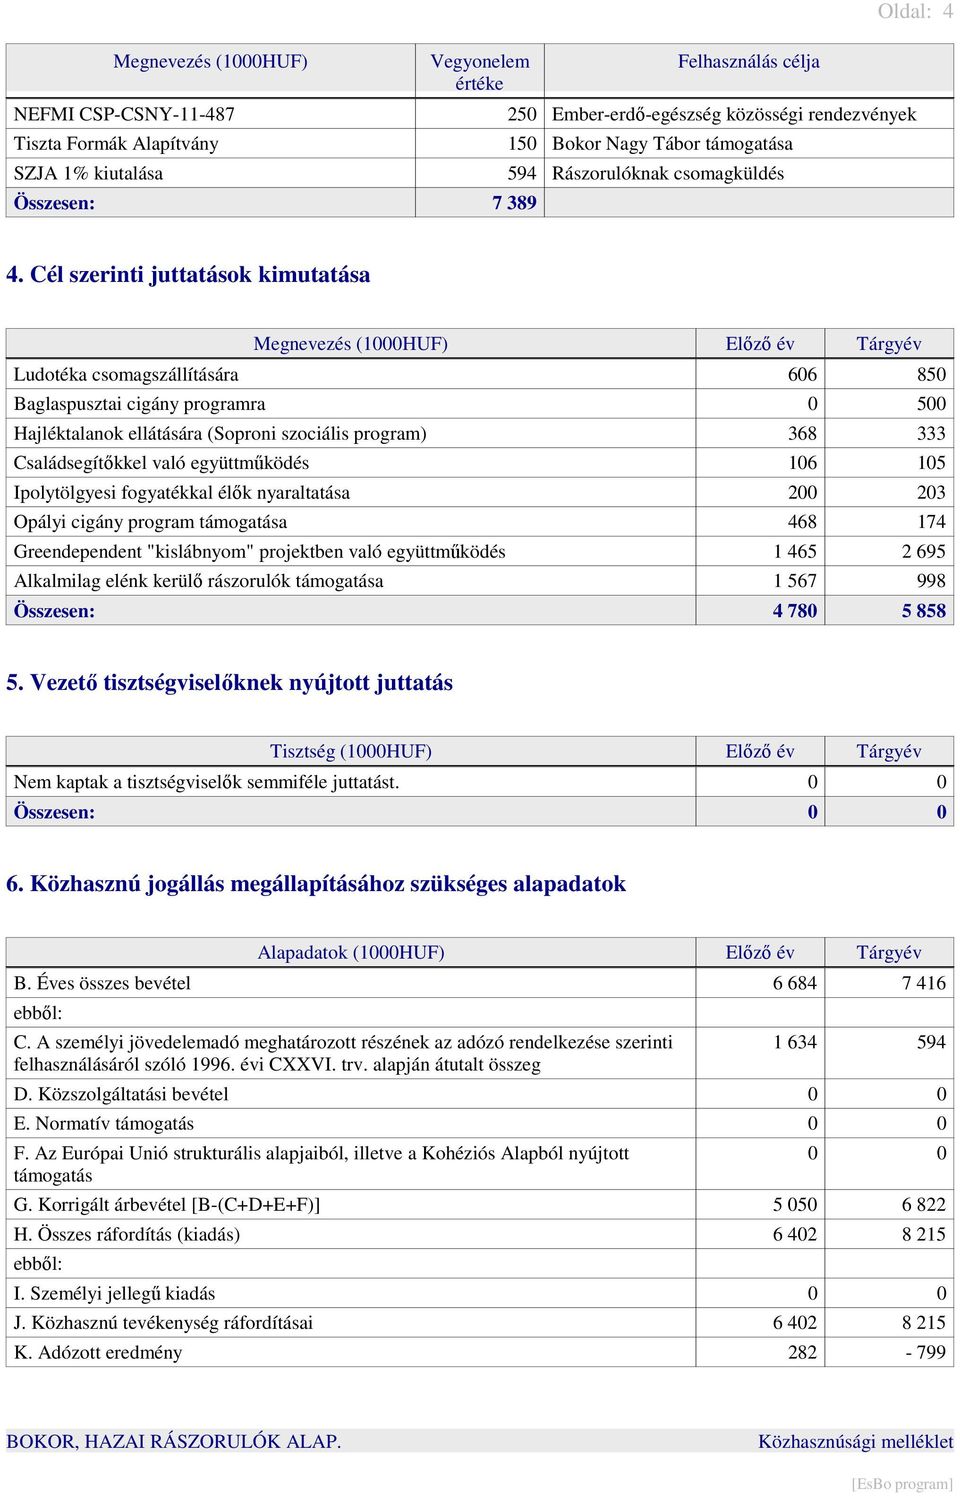 Cél szerinti juttatások kimutatása Megnevezés (1000HUF) Előző év Tárgyév Ludotéka csomagszállítására 606 850 Baglaspusztai cigány programra 0 500 Hajléktalanok ellátására (Soproni szociális program)